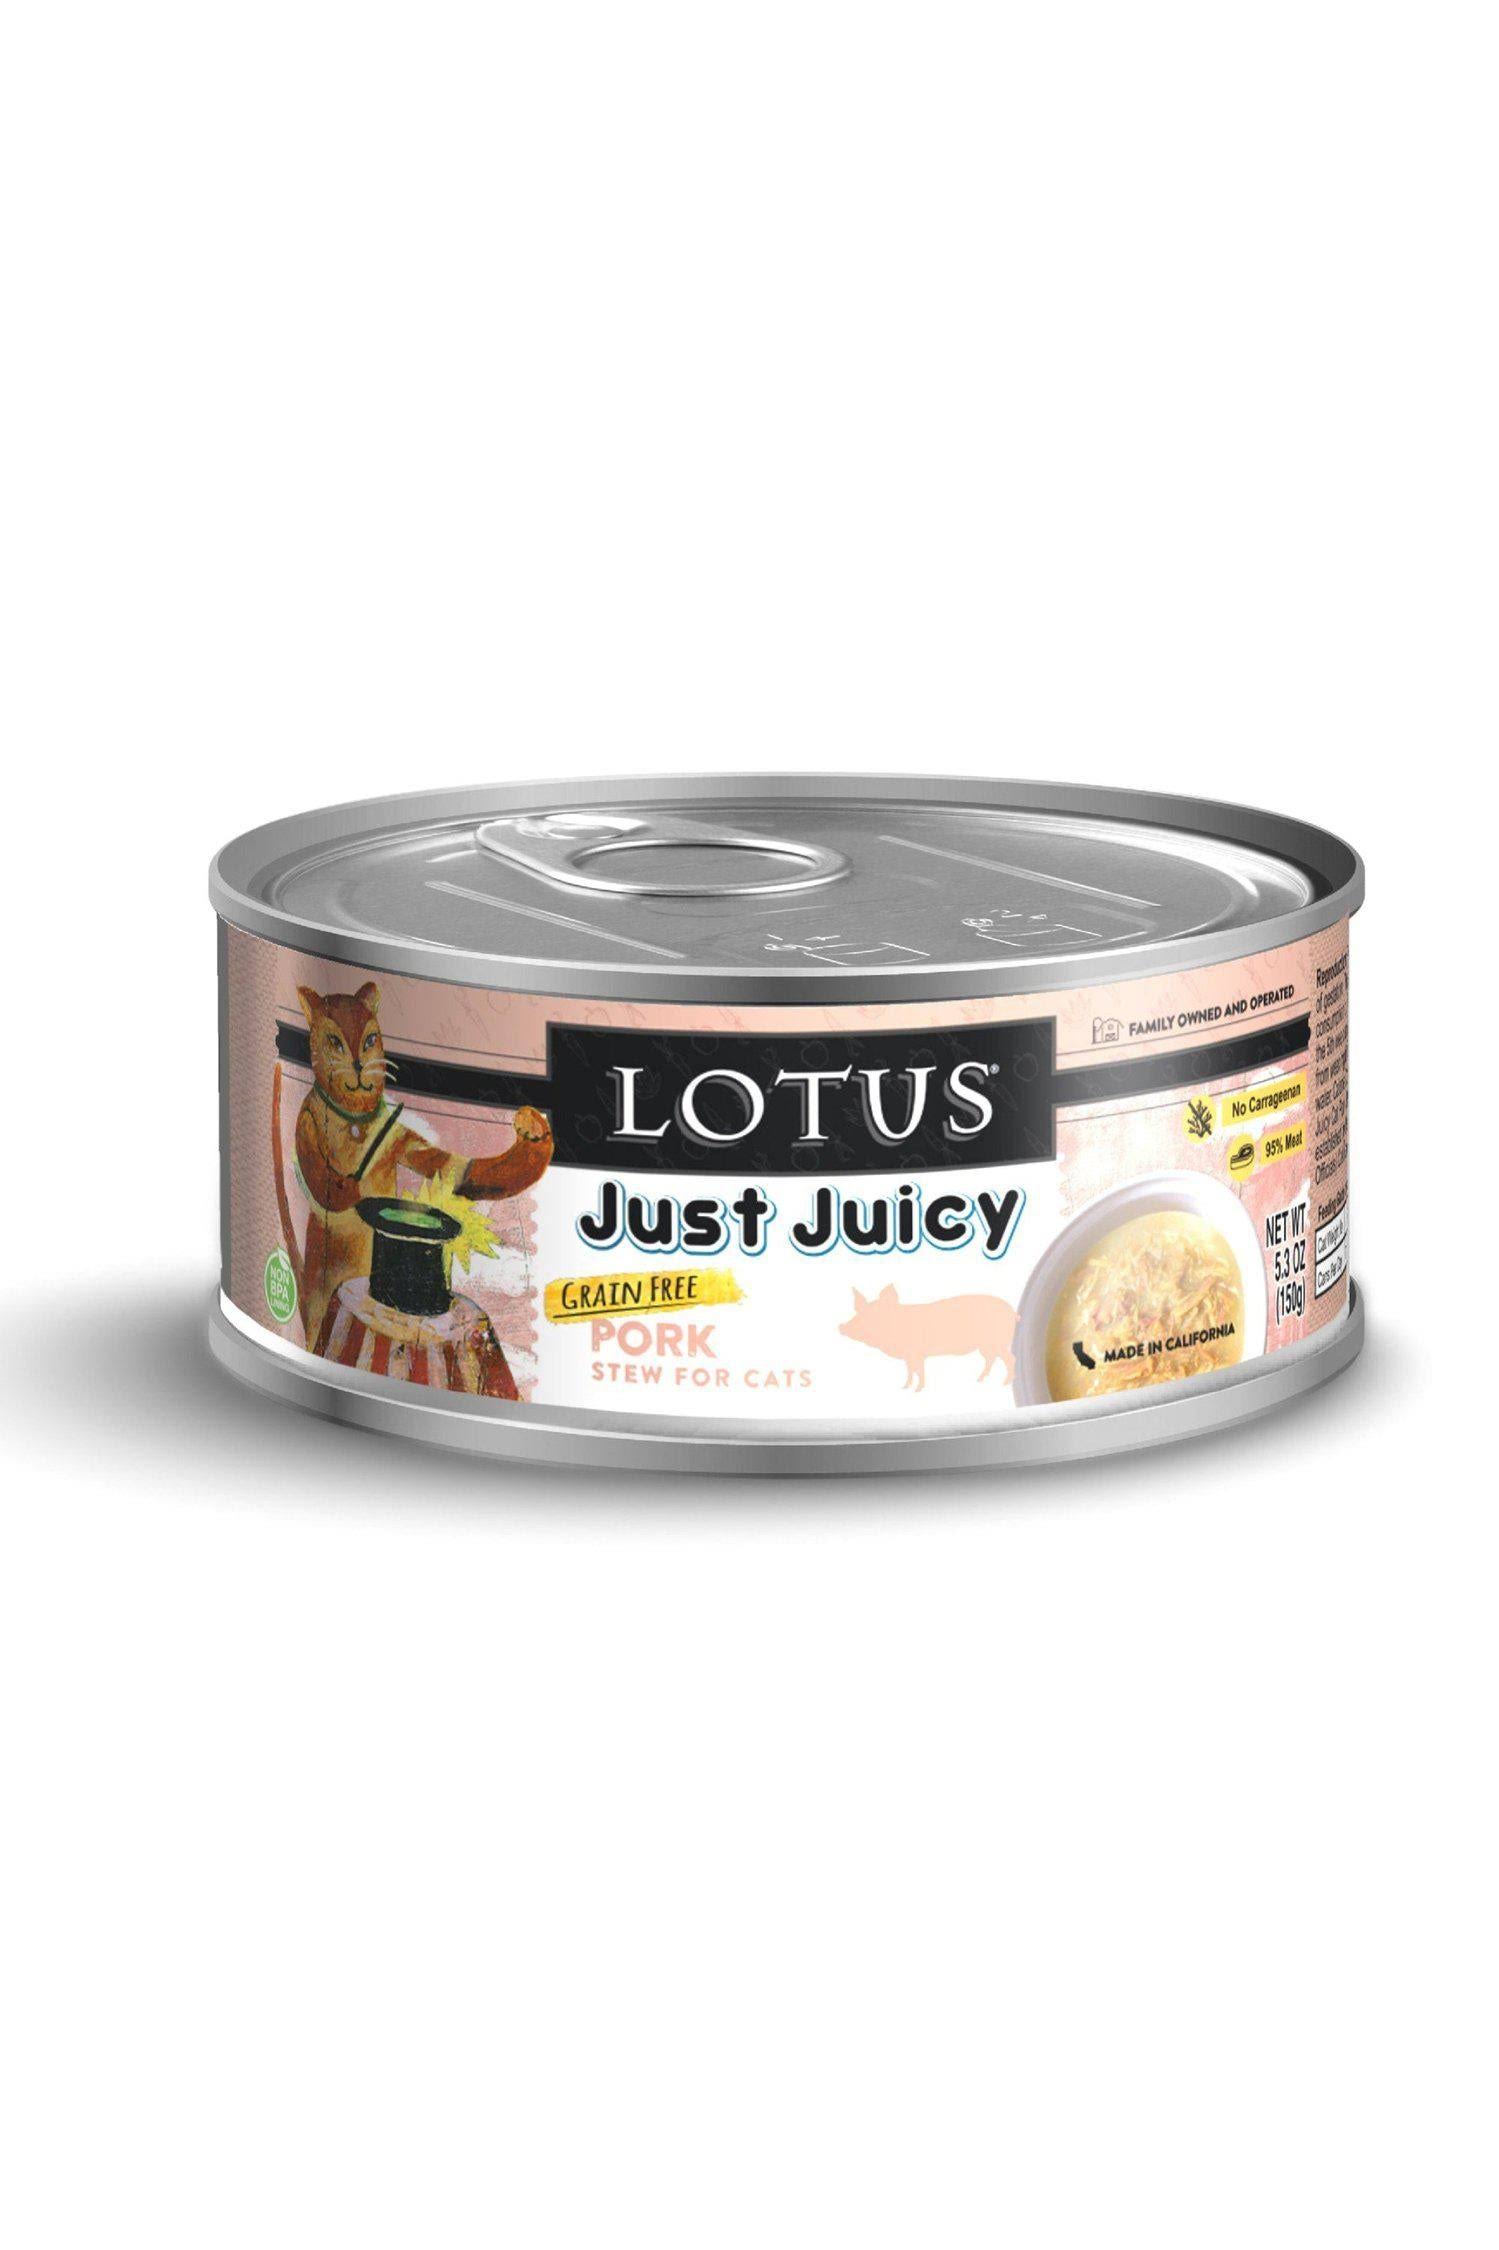 Lotus Just Juicy Pork Stew Canned Cat Food 5.3oz